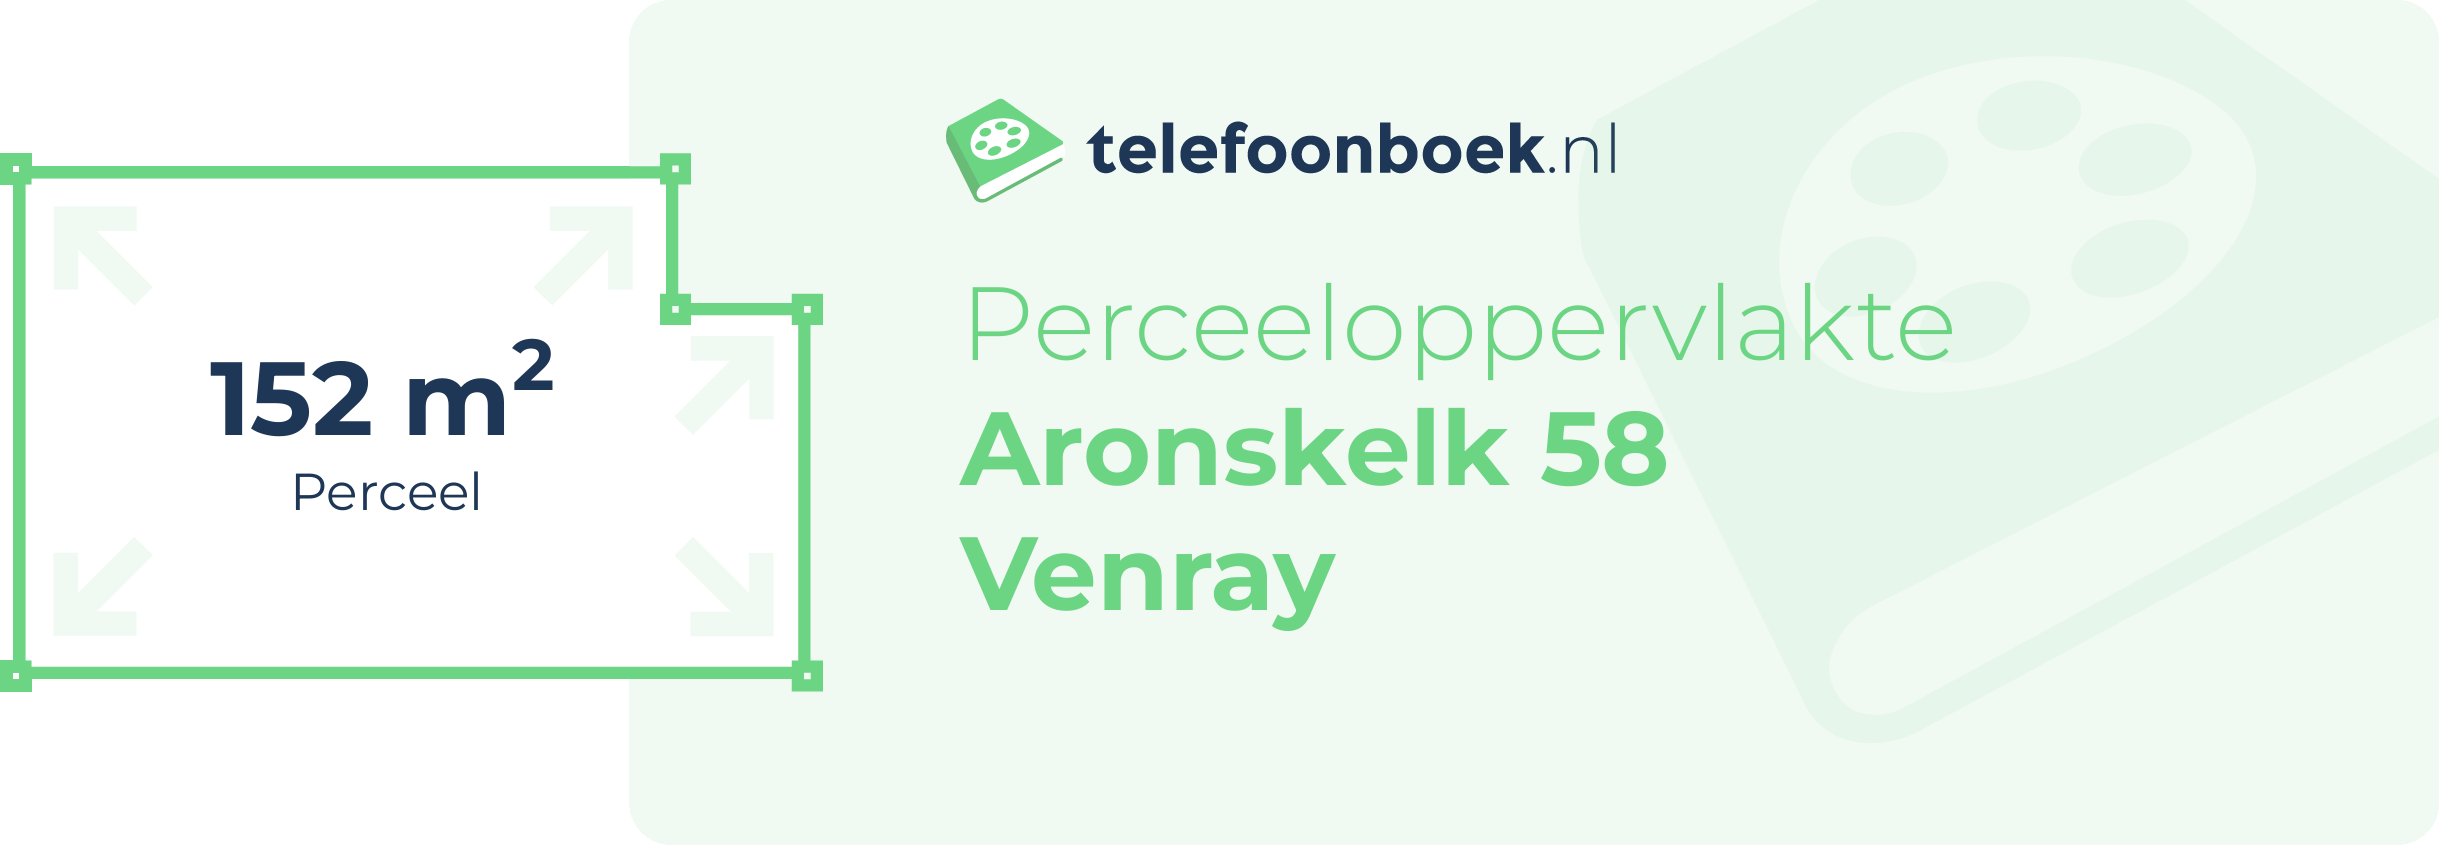 Perceeloppervlakte Aronskelk 58 Venray